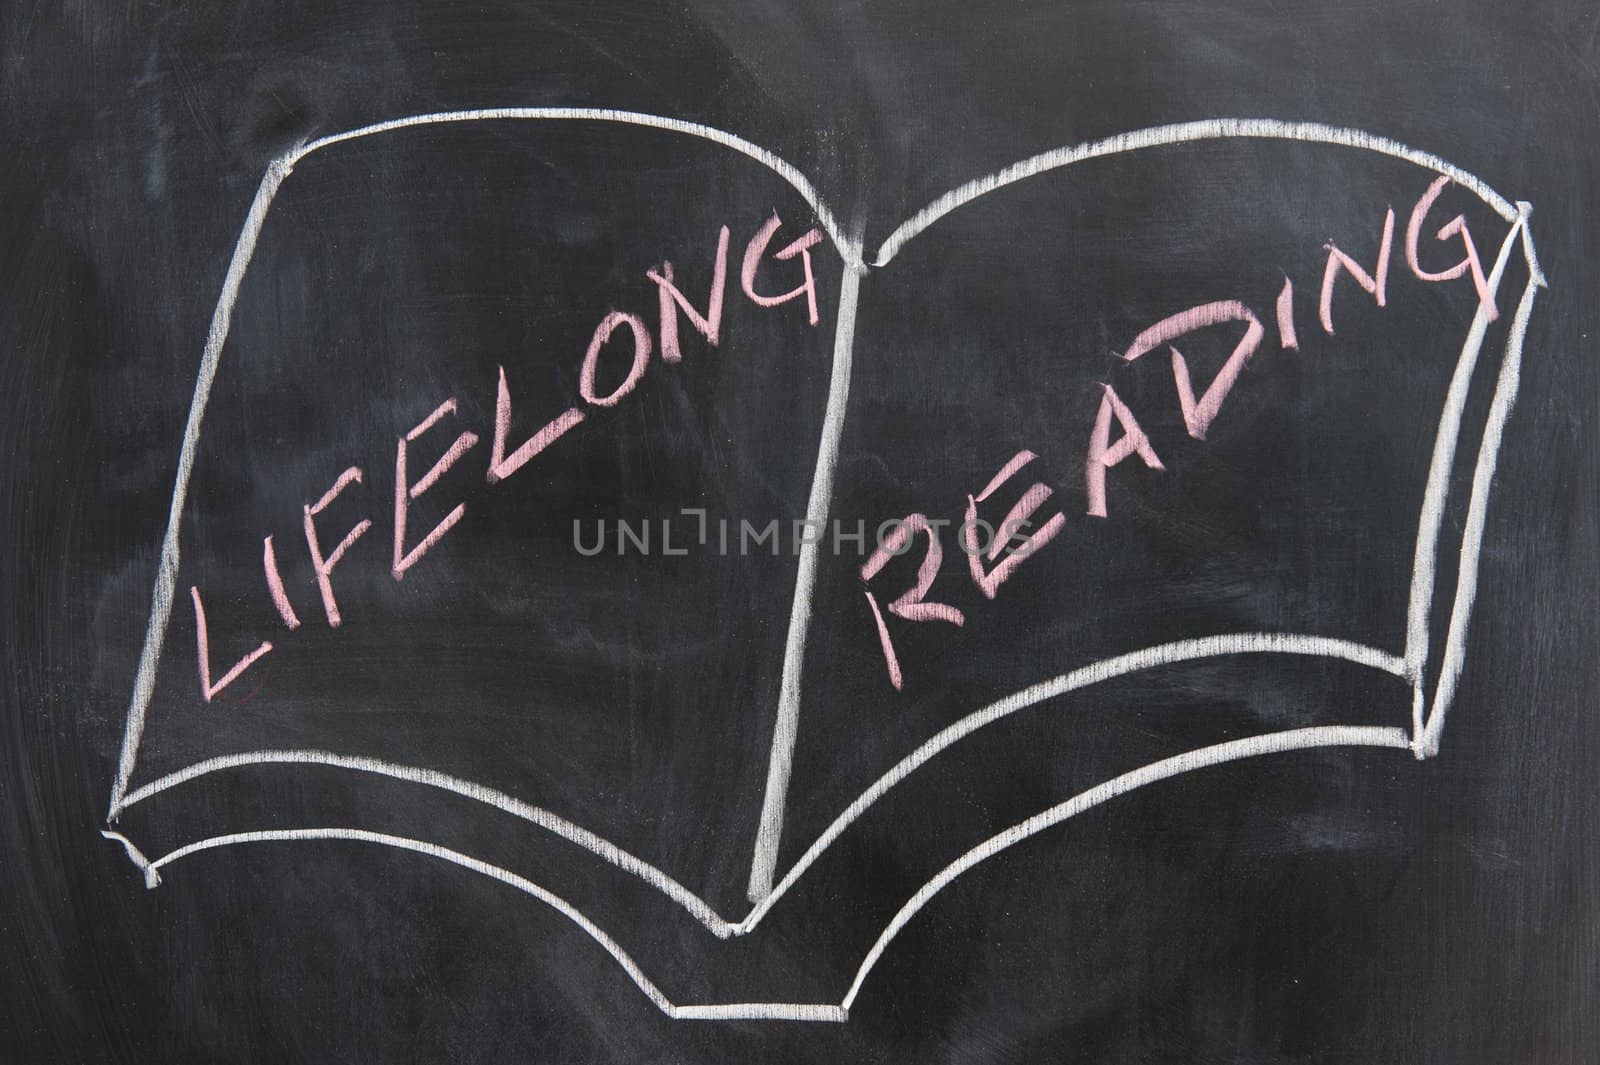 Chalkboard image - concept of lifelong reading habit